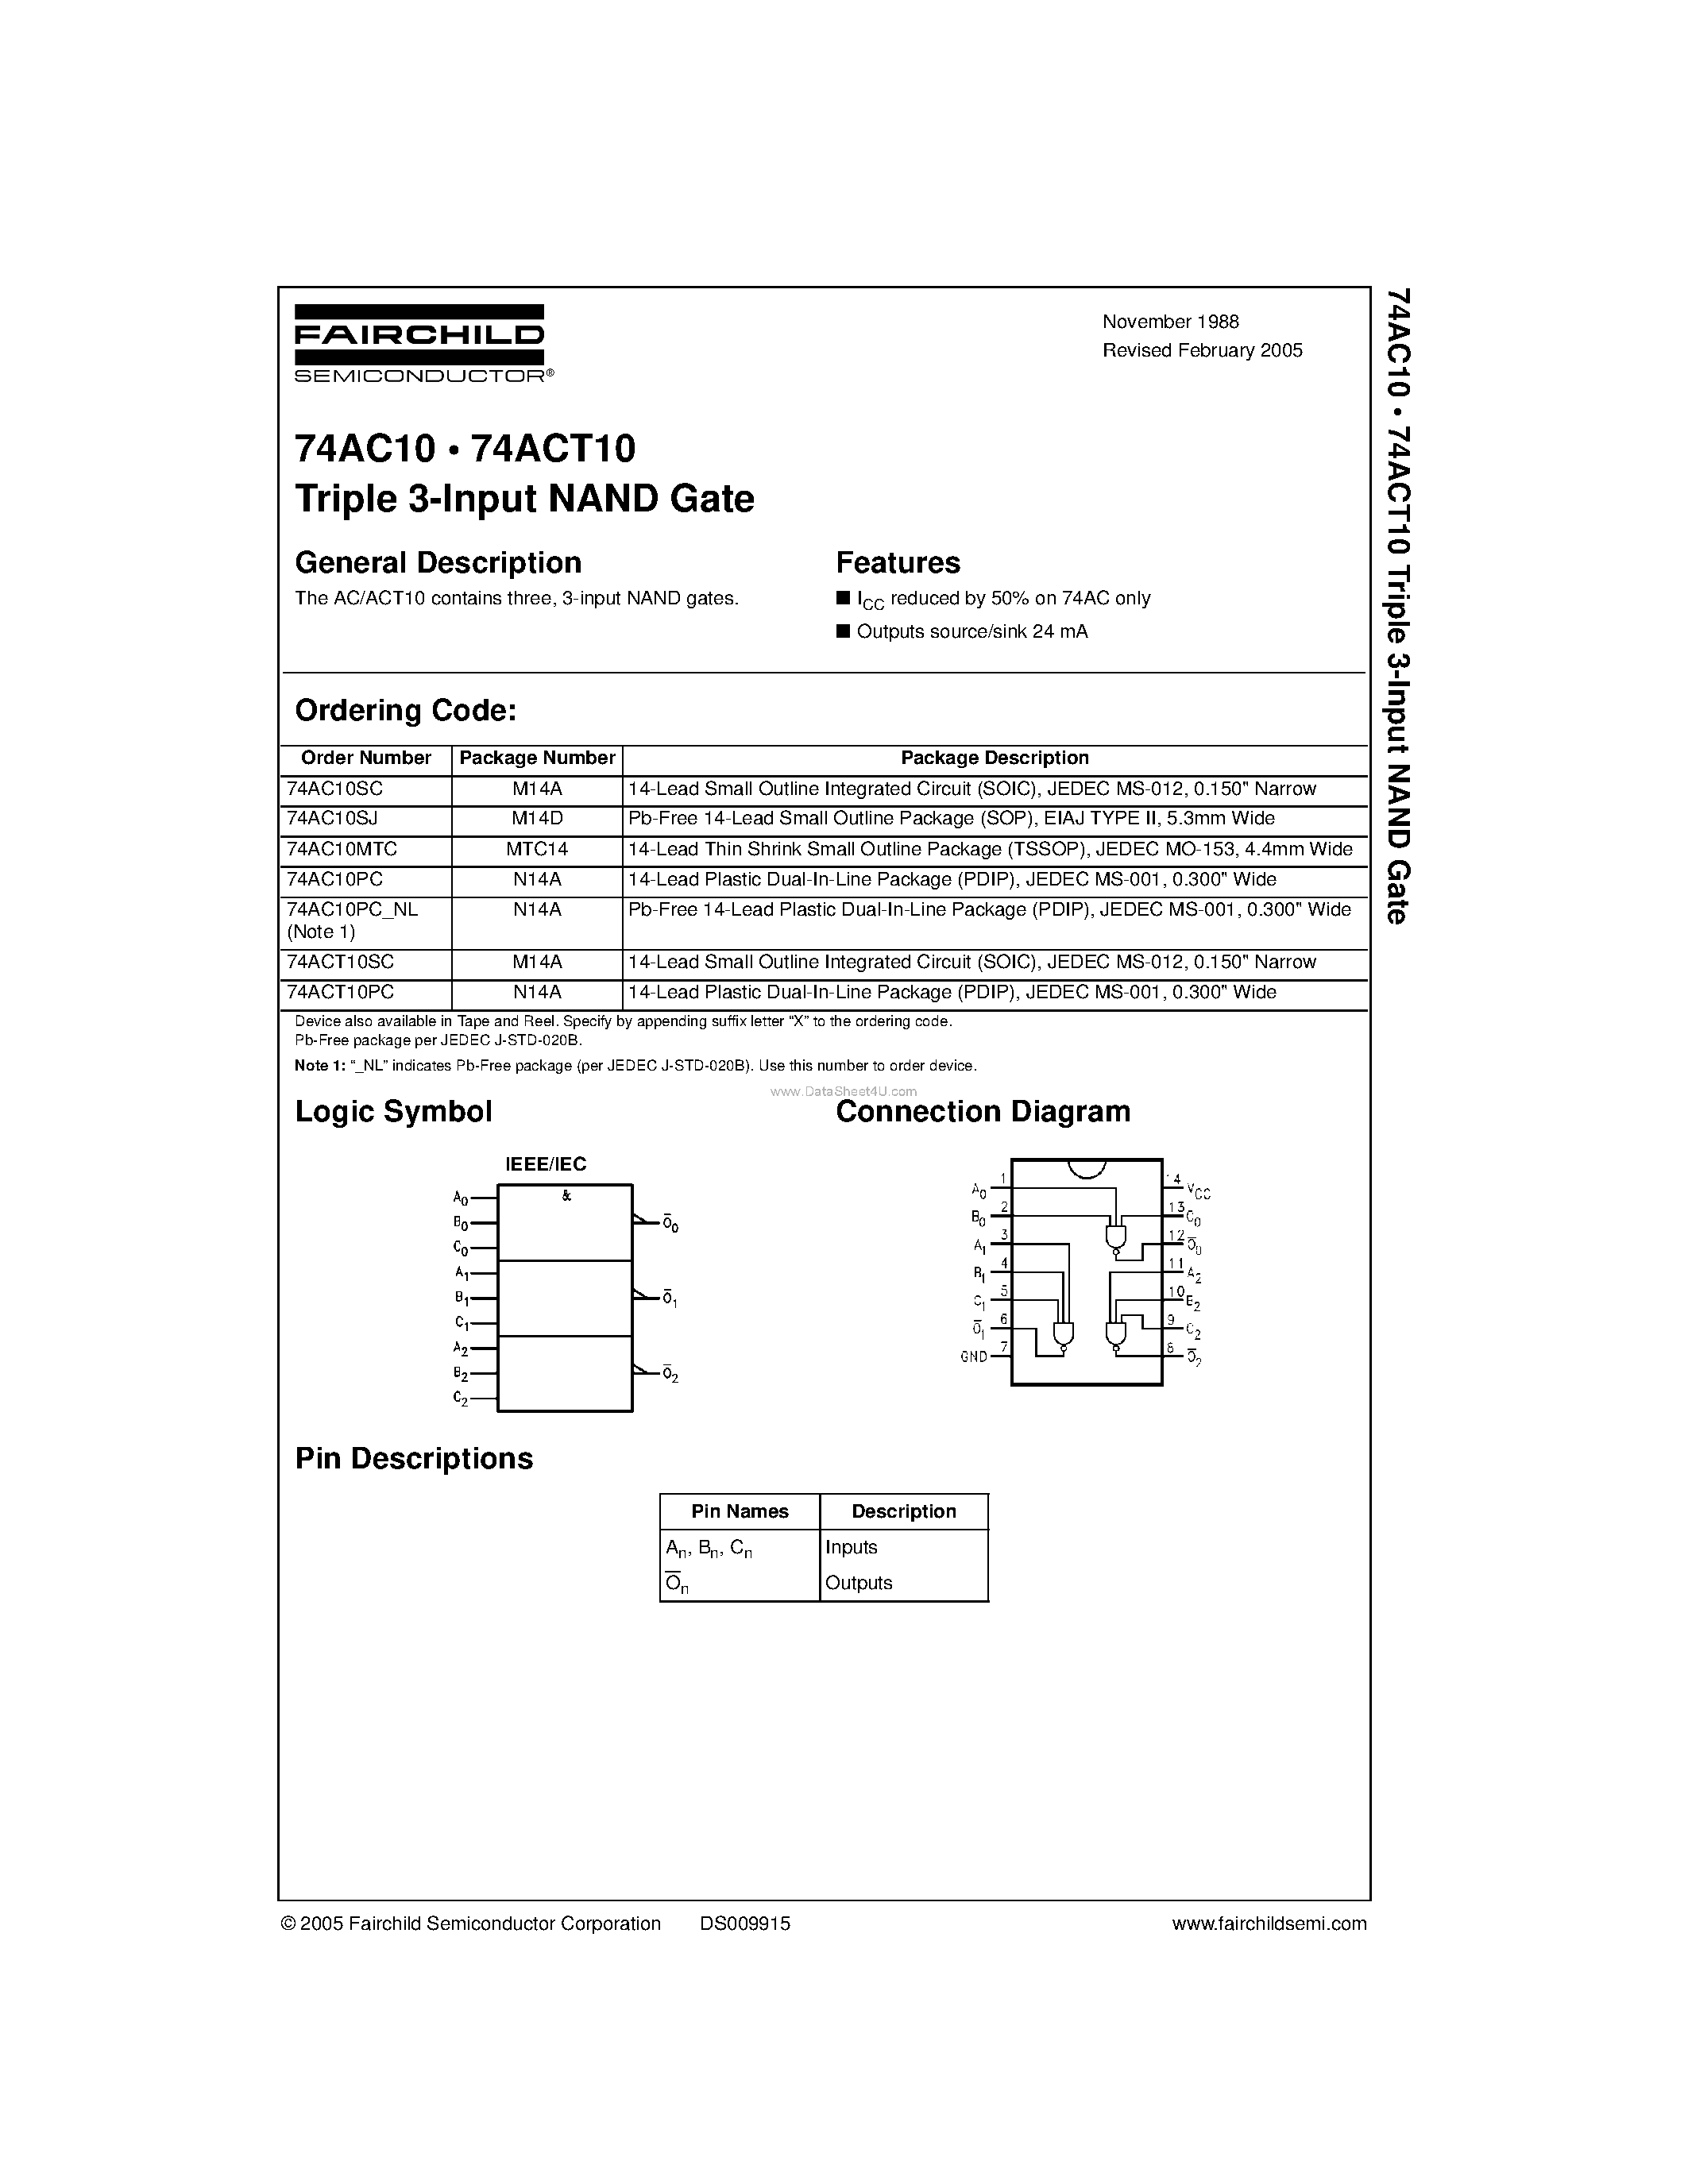 Datasheet 74AC10MTC - Triple 3-Input NAND Gate page 1